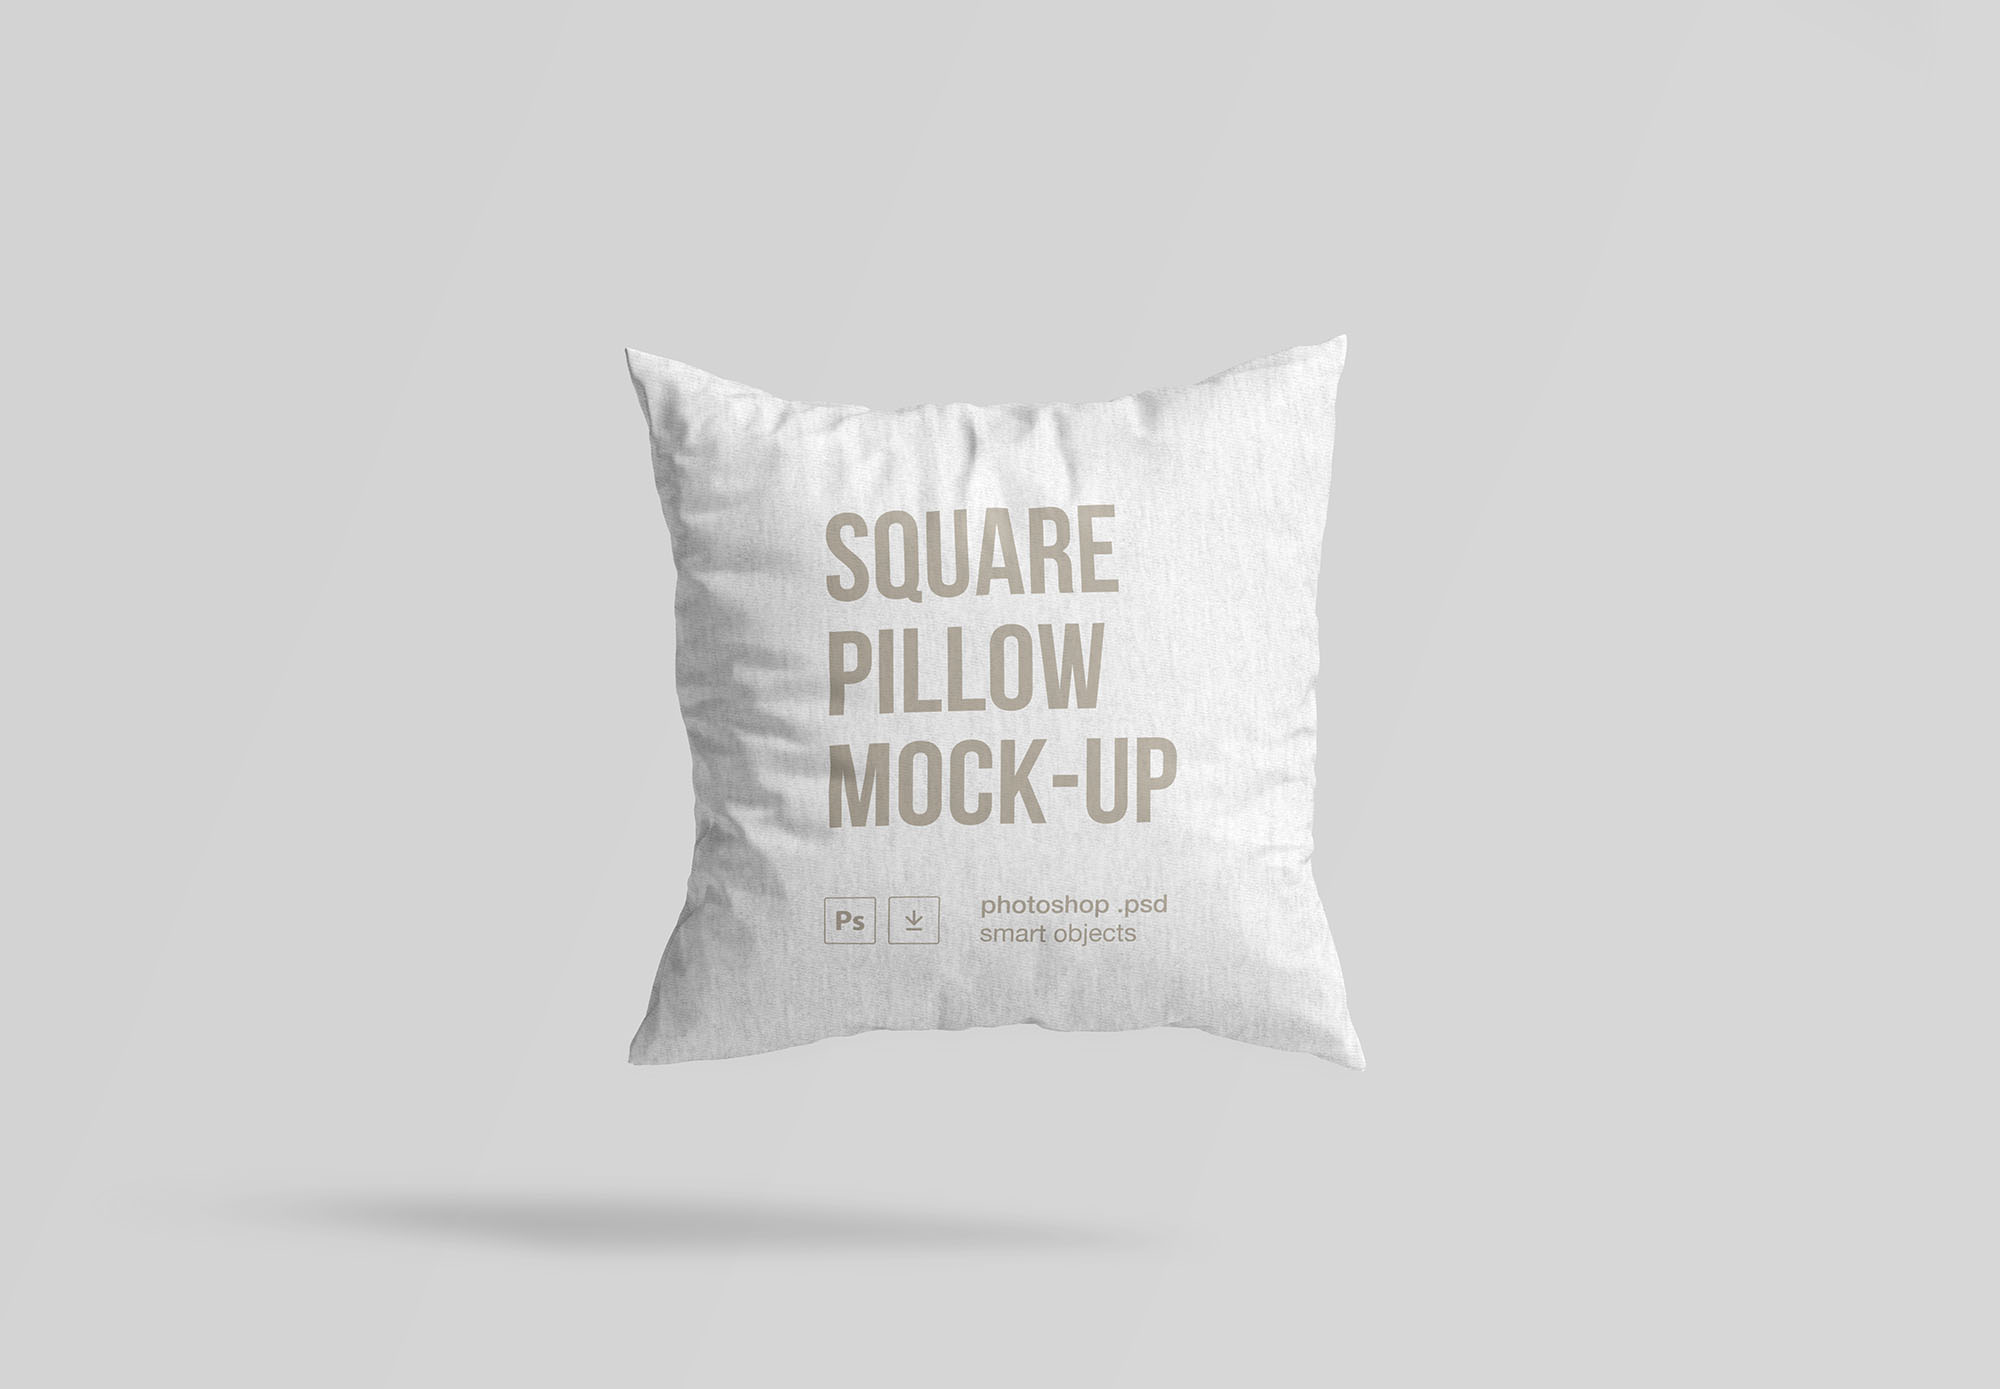 方形枕头抱枕外观设计样机模板 Square Pillow Mockup插图